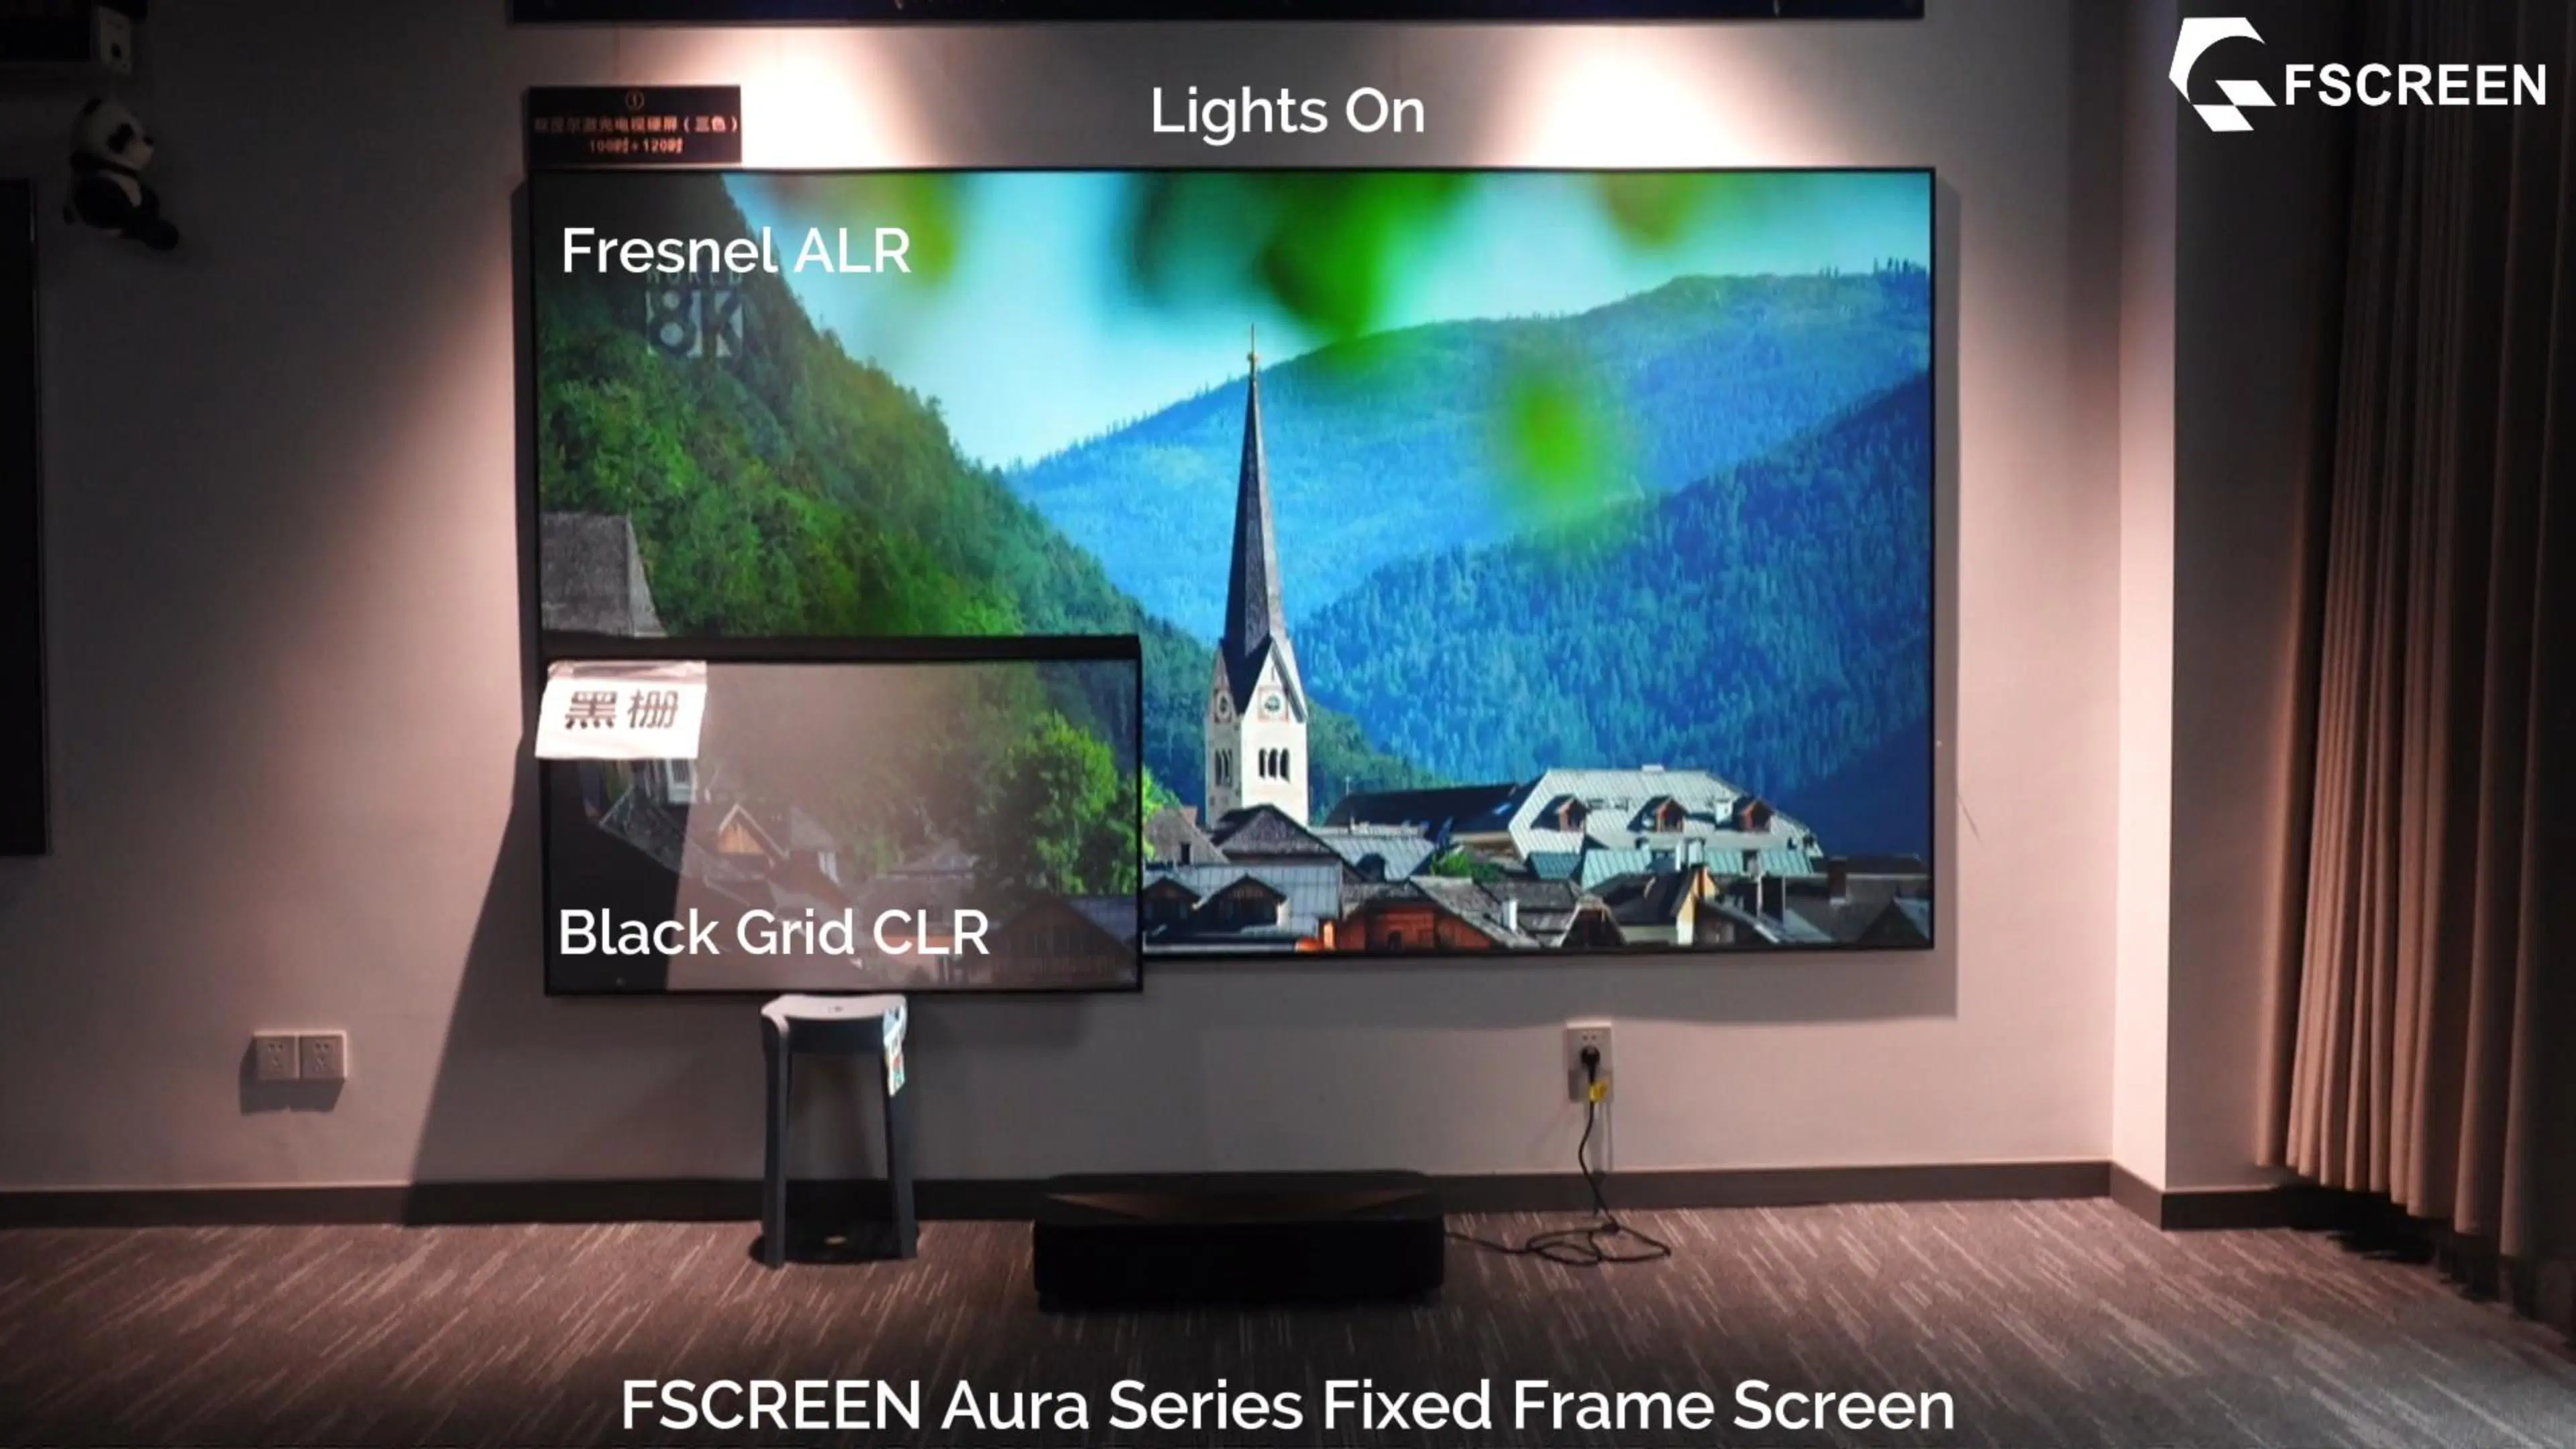 Aura Fscreen Série 120 polegada Alr Tela de projeção para Ultra Projector de curta distância os televisores a Laser